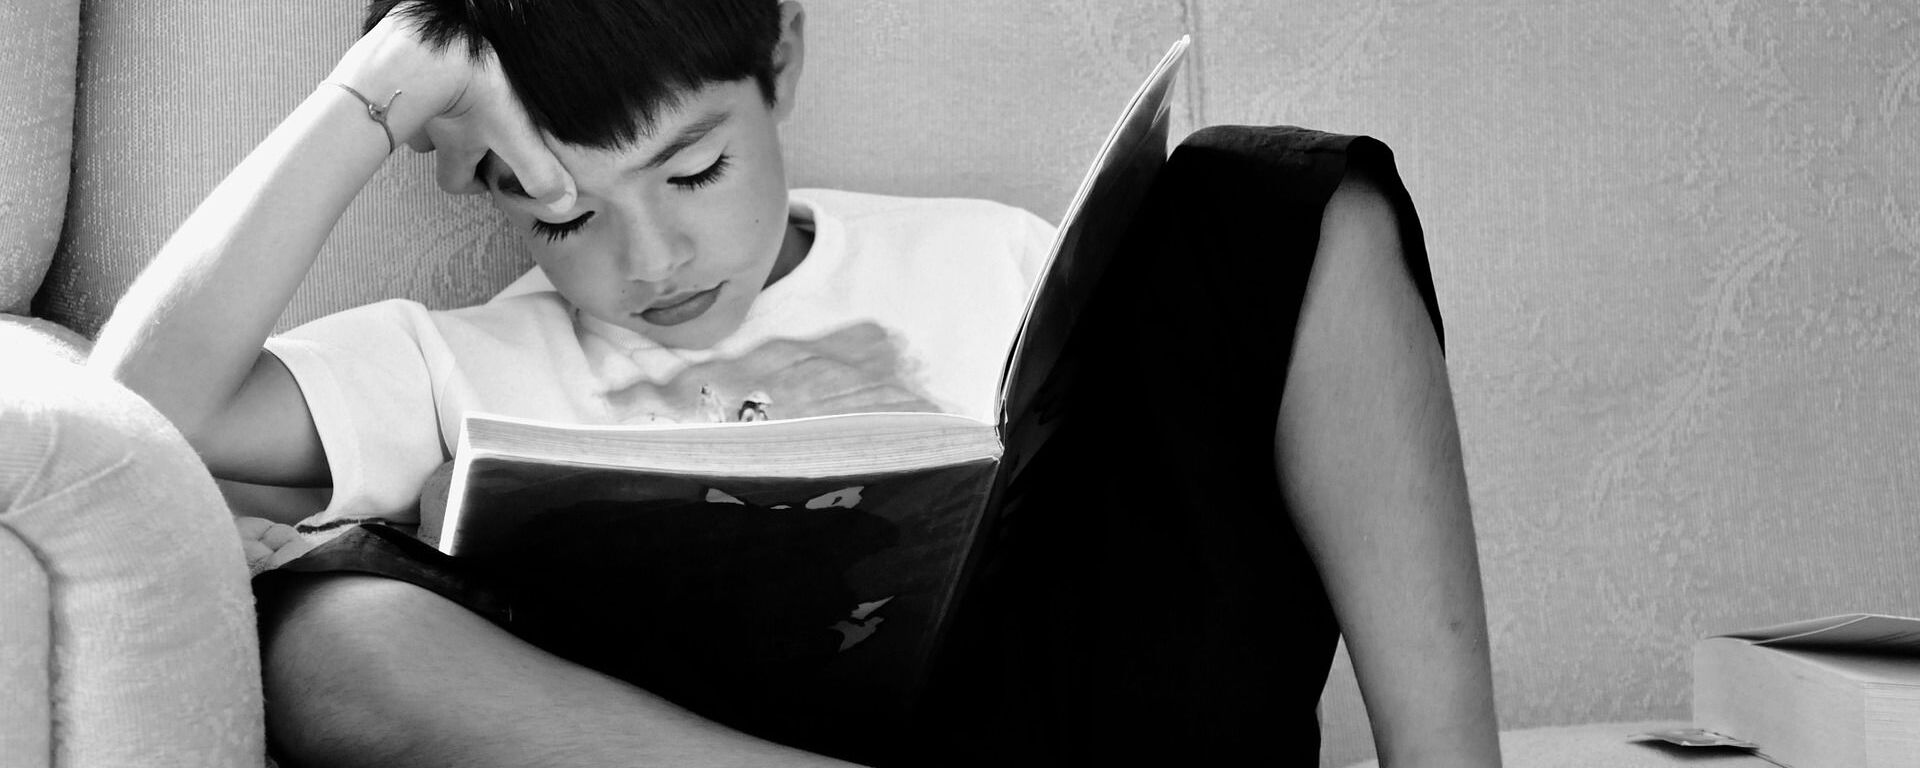 ბიჭი კითხულობს წიგნს  - Sputnik საქართველო, 1920, 19.02.2021